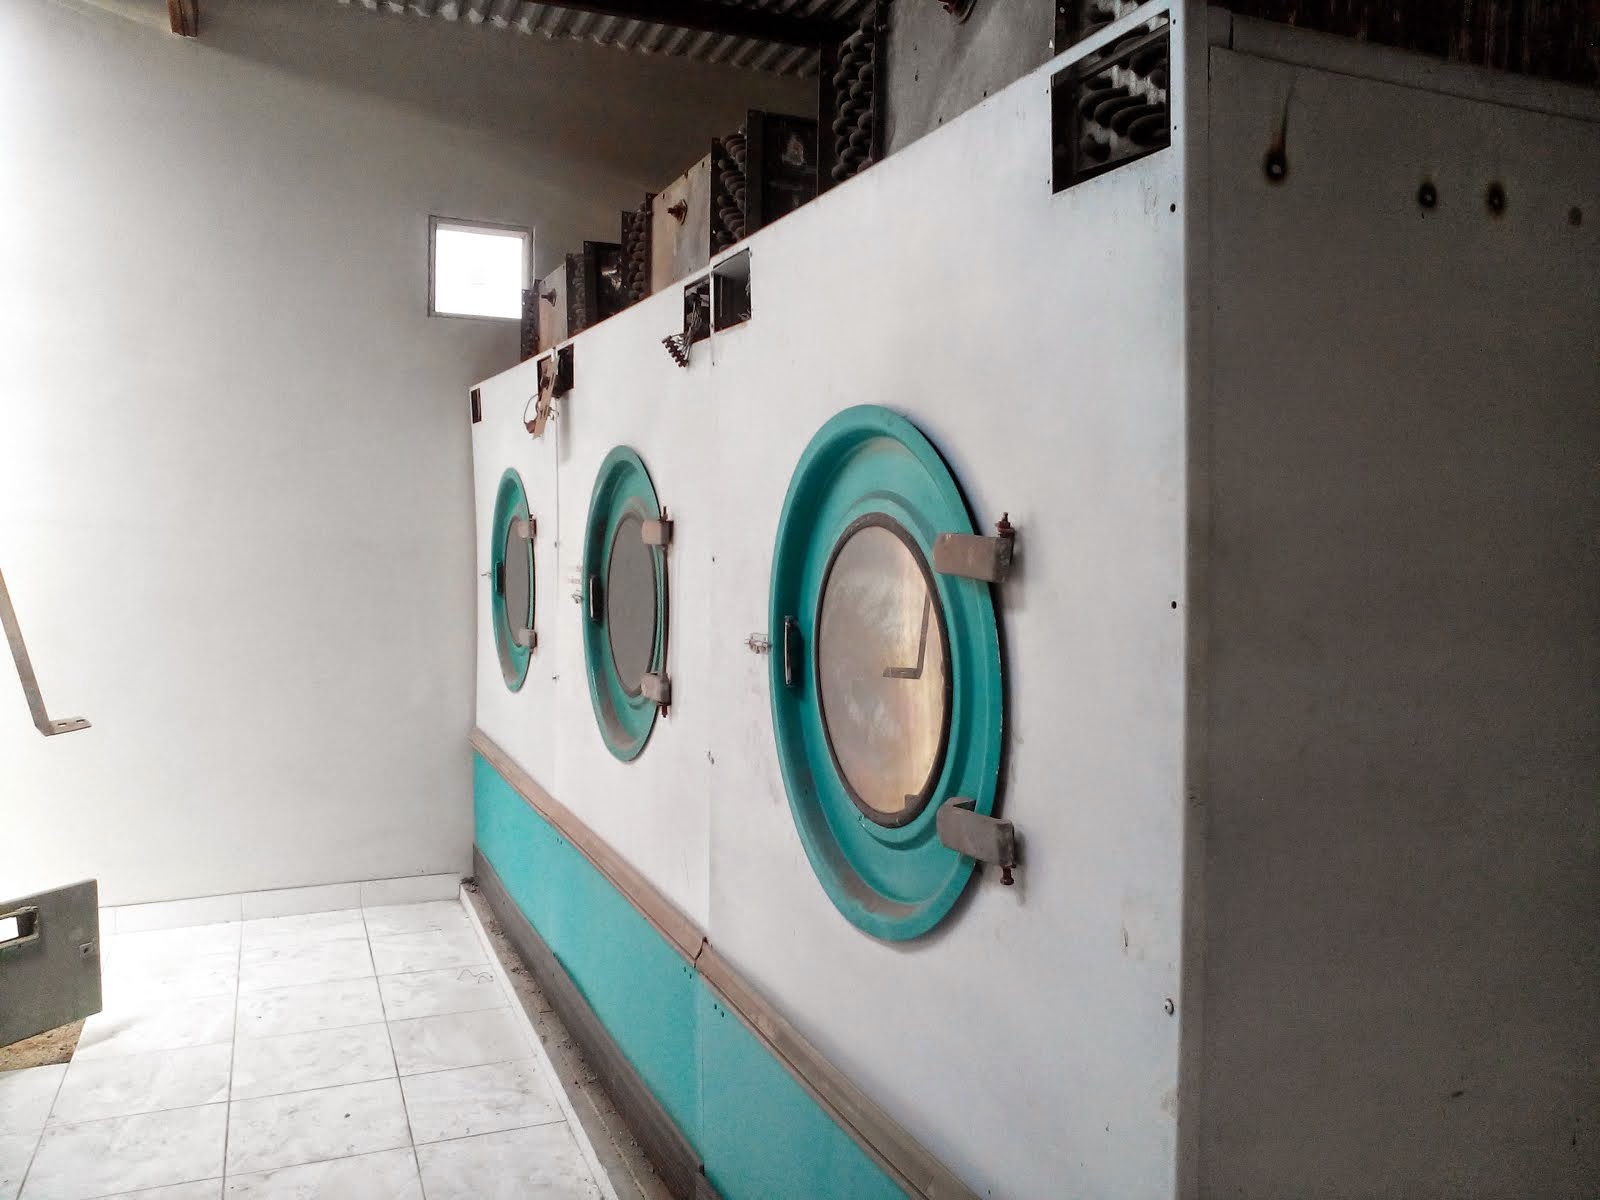 Service mesin laundry di bandung